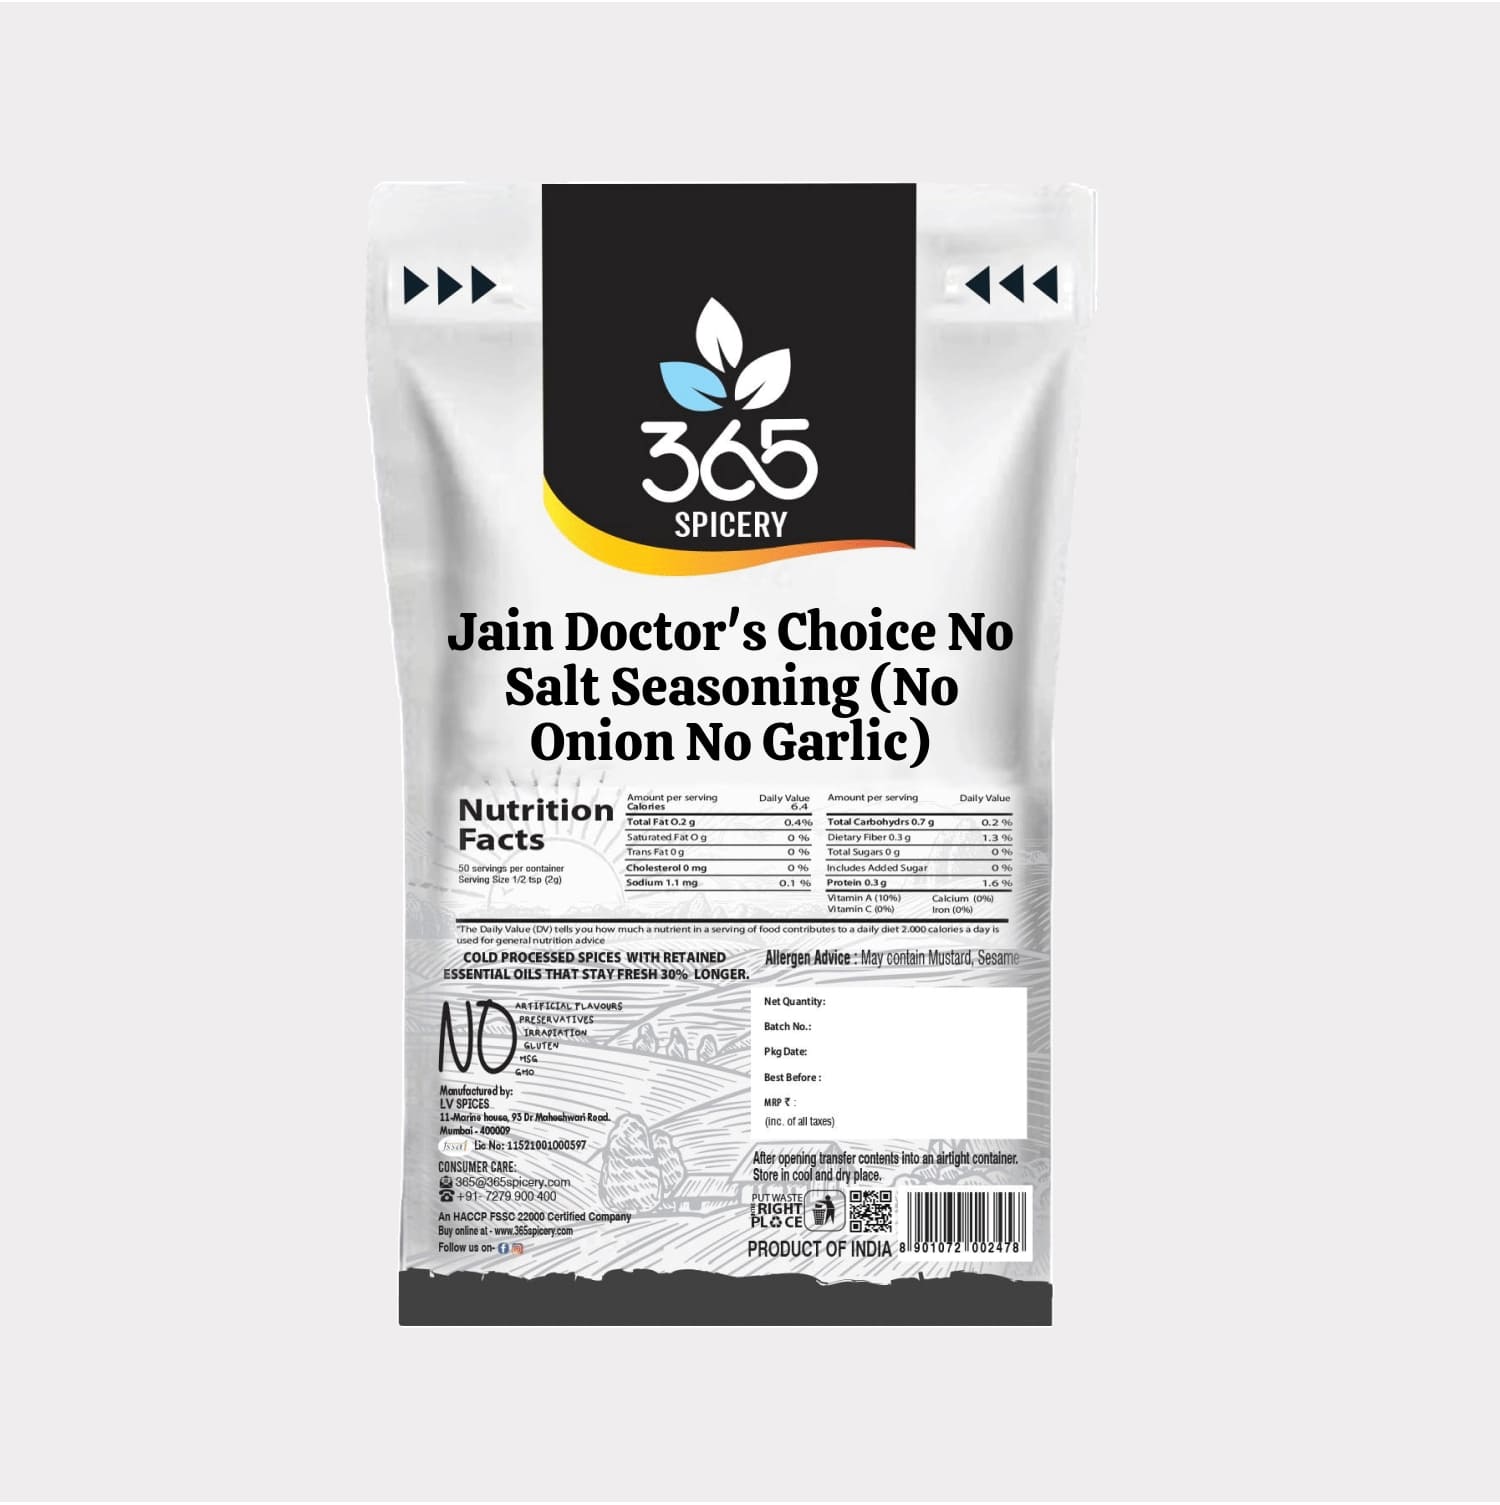 Jain Doctor's Choice No Salt Seasoning (No Onion No Garlic)